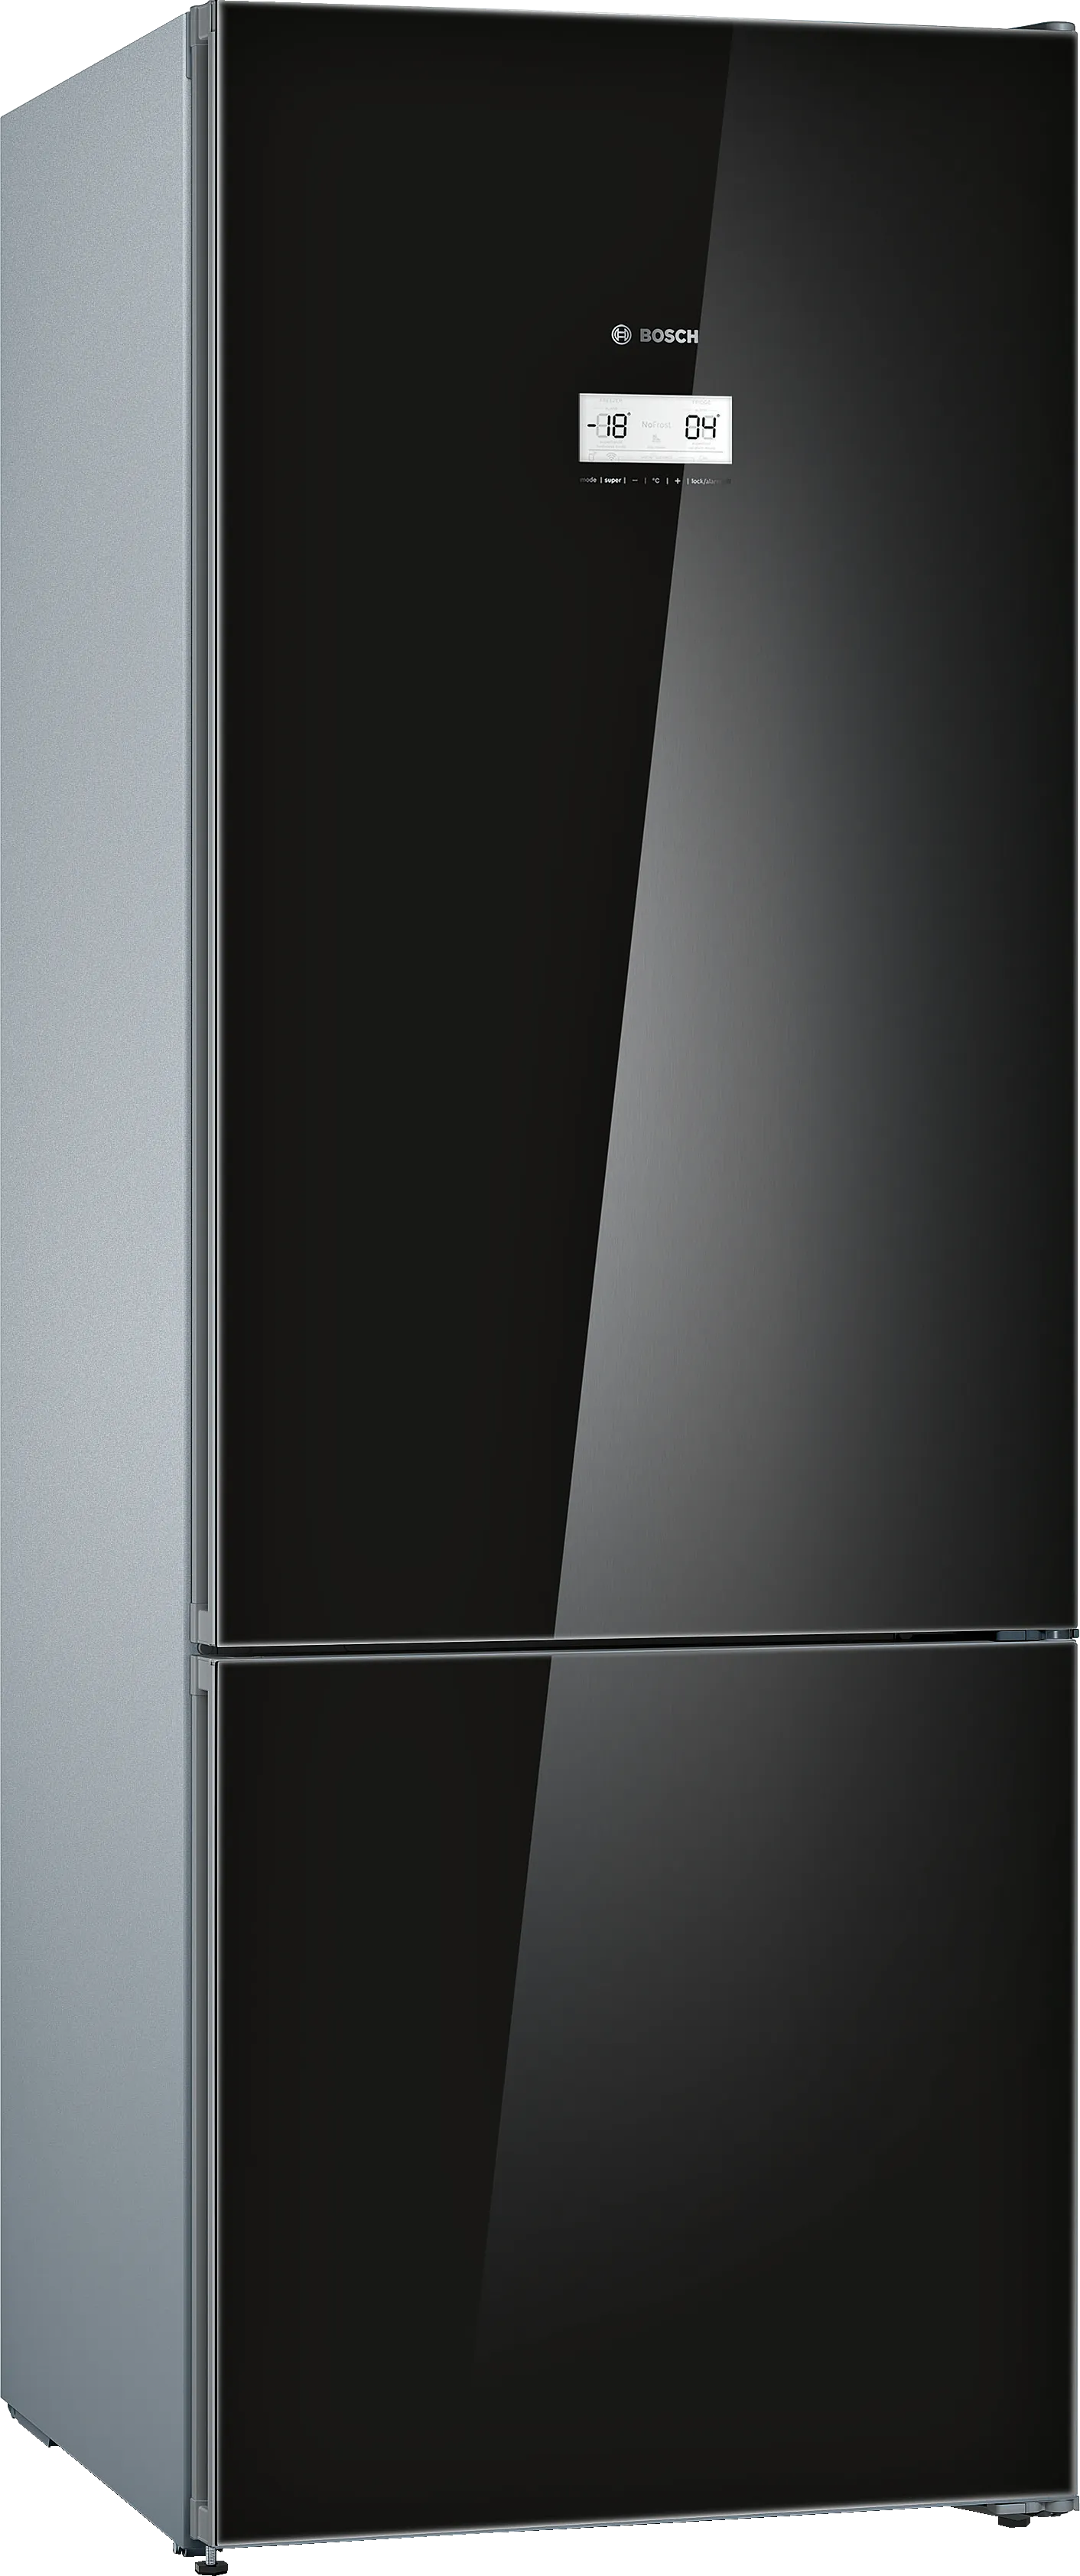 Серия 6 Отдельностоящий холодильник с нижней морозильной камерой 193 x 70 cm Чёрный 